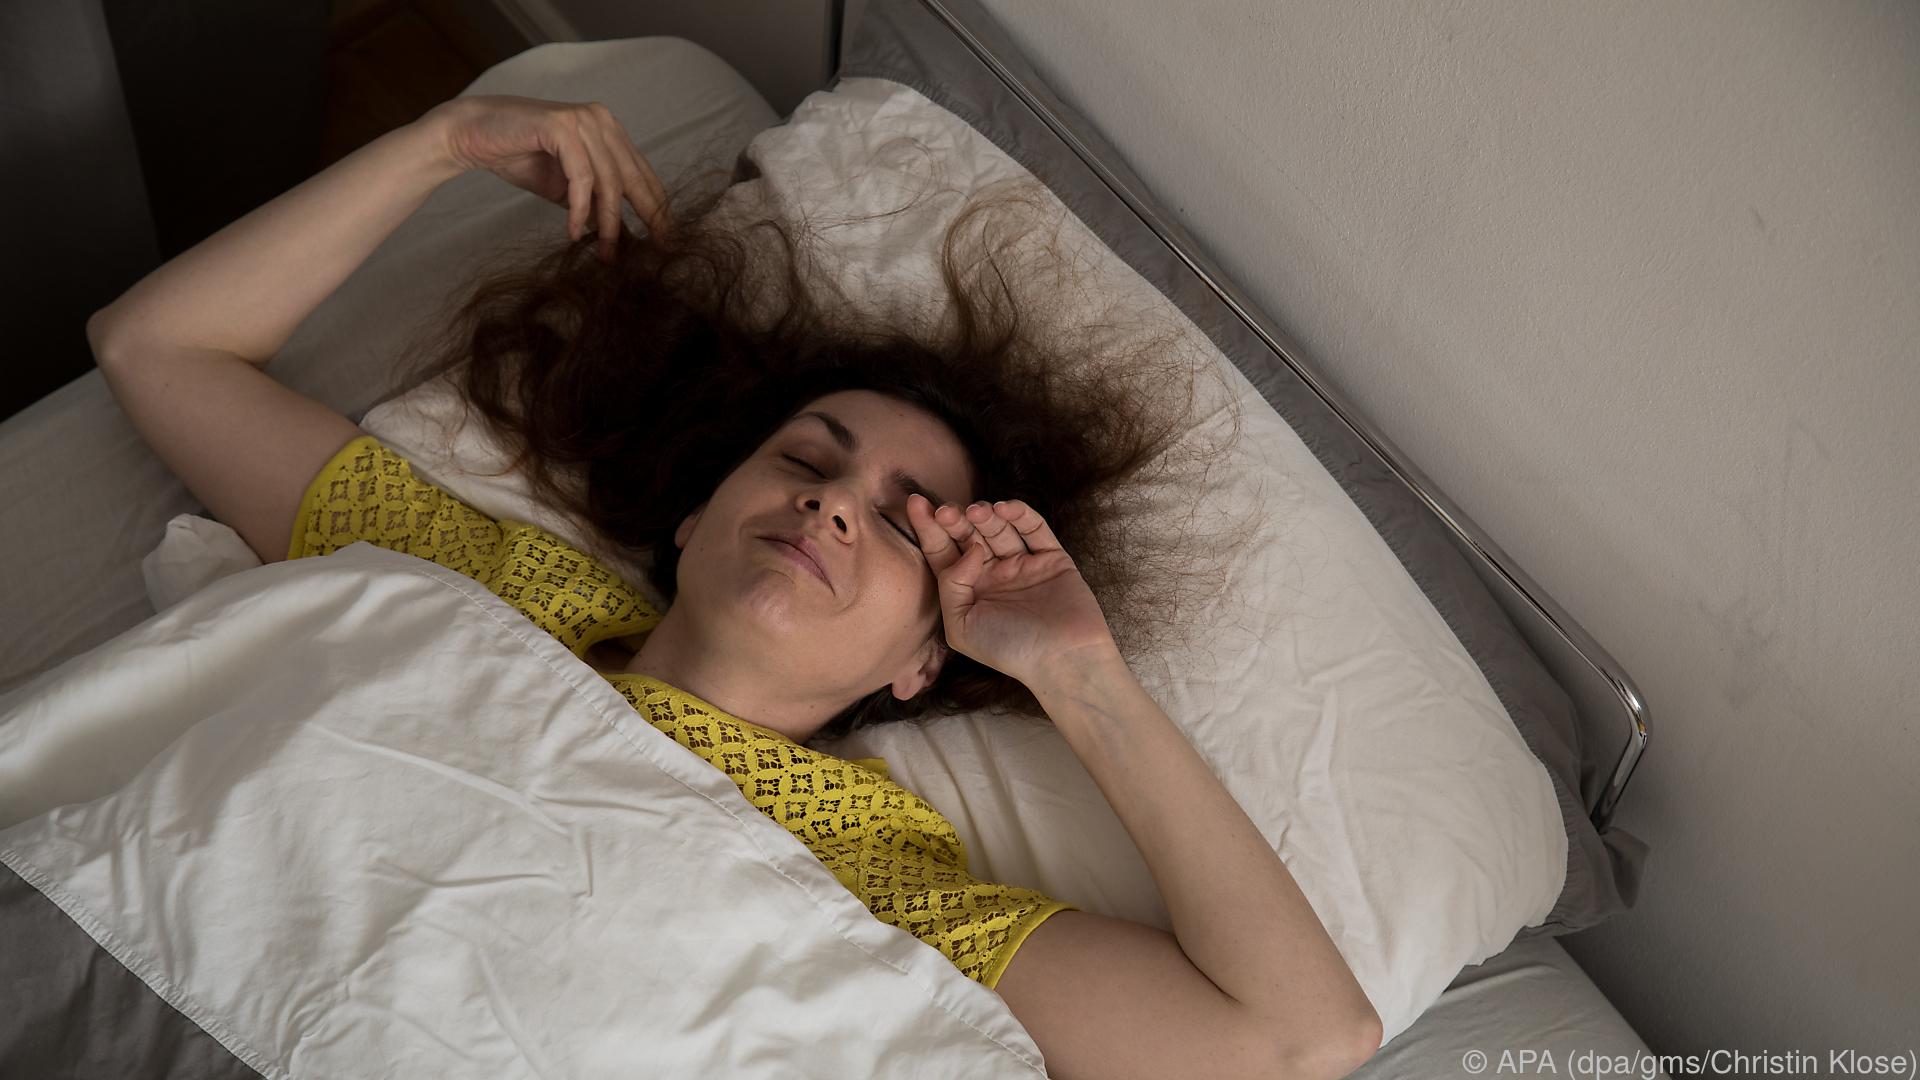 Wenig Schlaf erhöht Risiko für Arterienverschluss drastisch